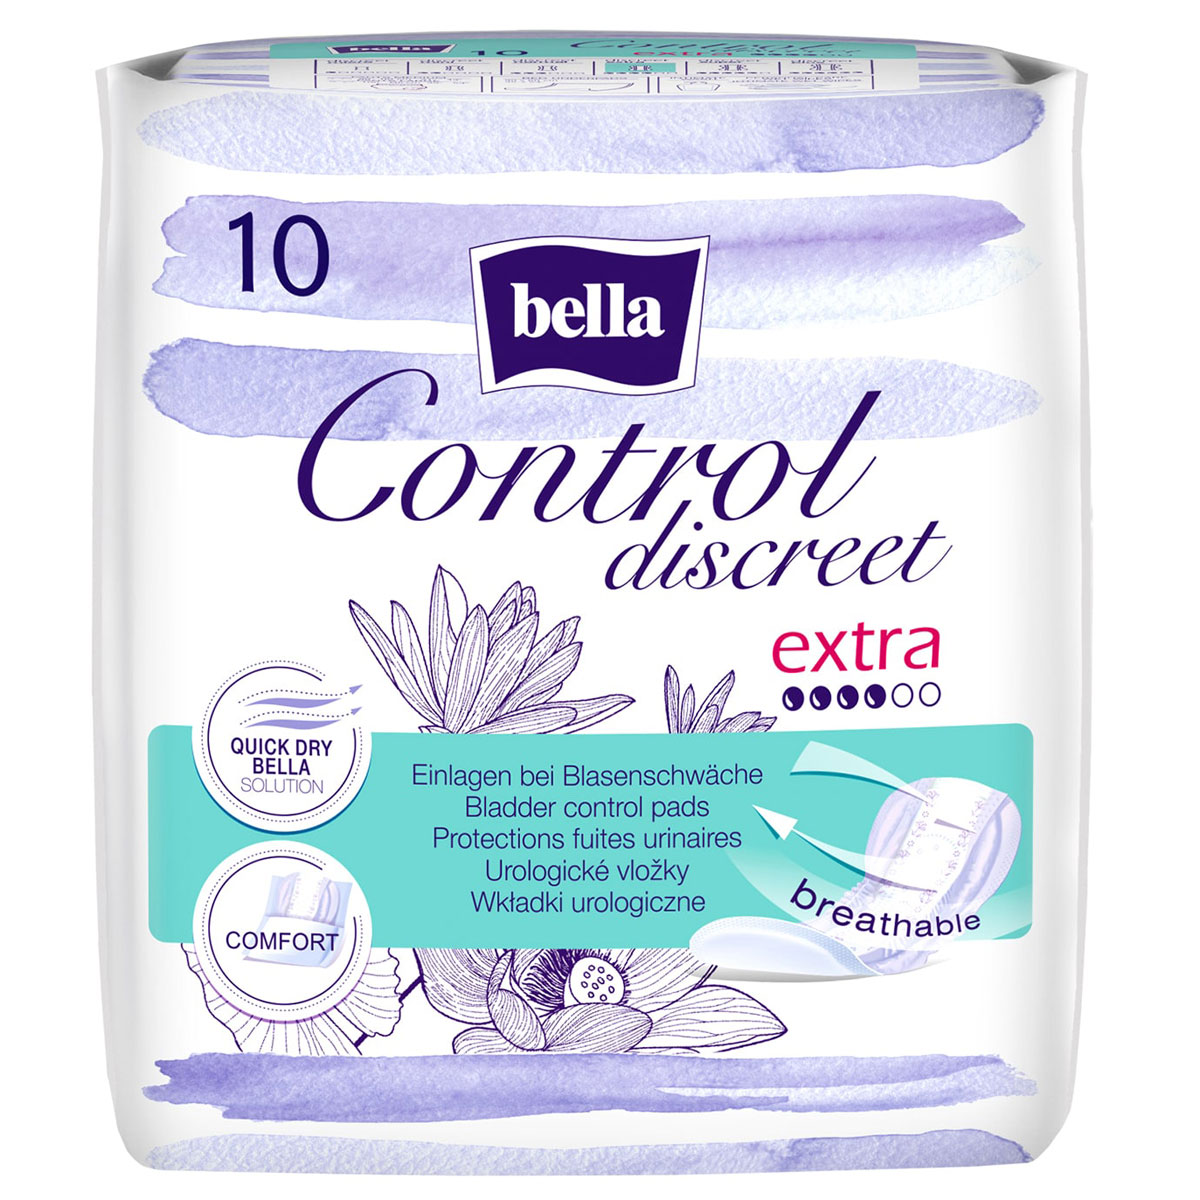 Bella Control Discreet - EXTRA - Hygieneeinlagen - 4x10 Stück Pack